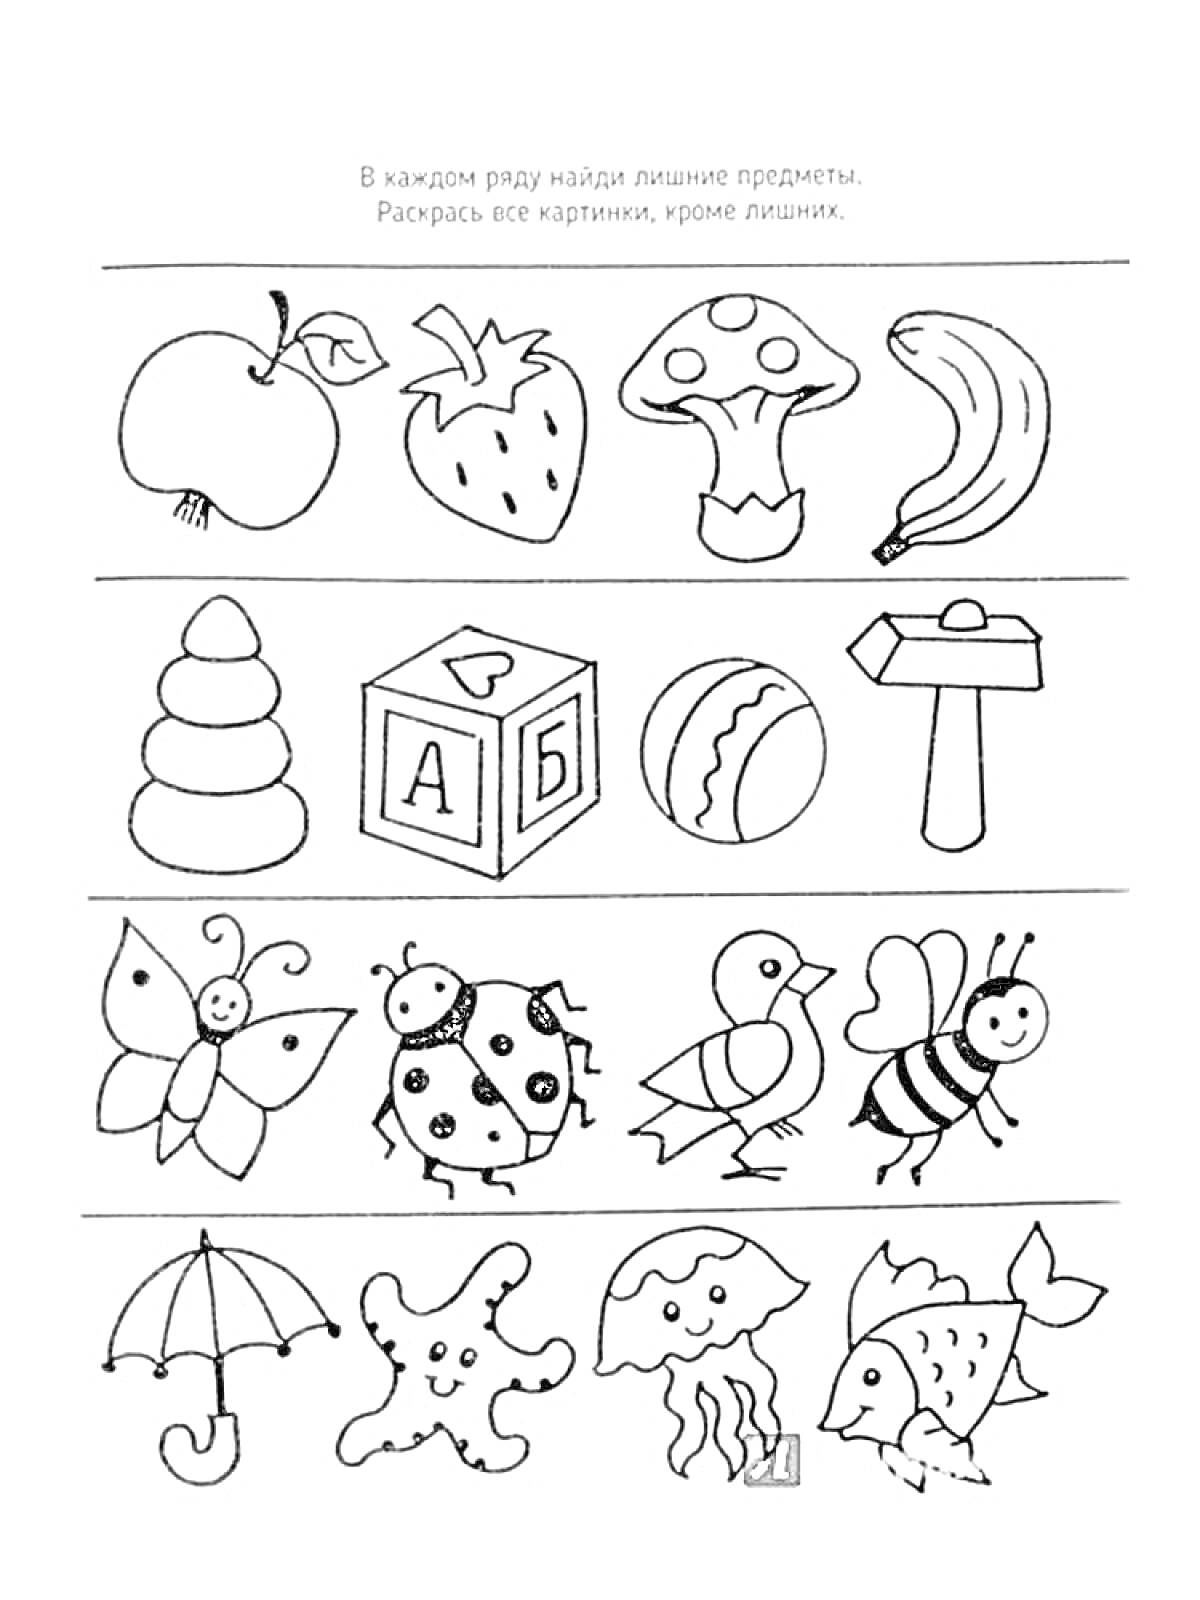 Лишние предметы: яблоко, клубника, гриб, банан, пирамидка, кубик, мяч, молоток, бабочка, божья коровка, ослик, пчела, зонт, пятно, облако, рыба